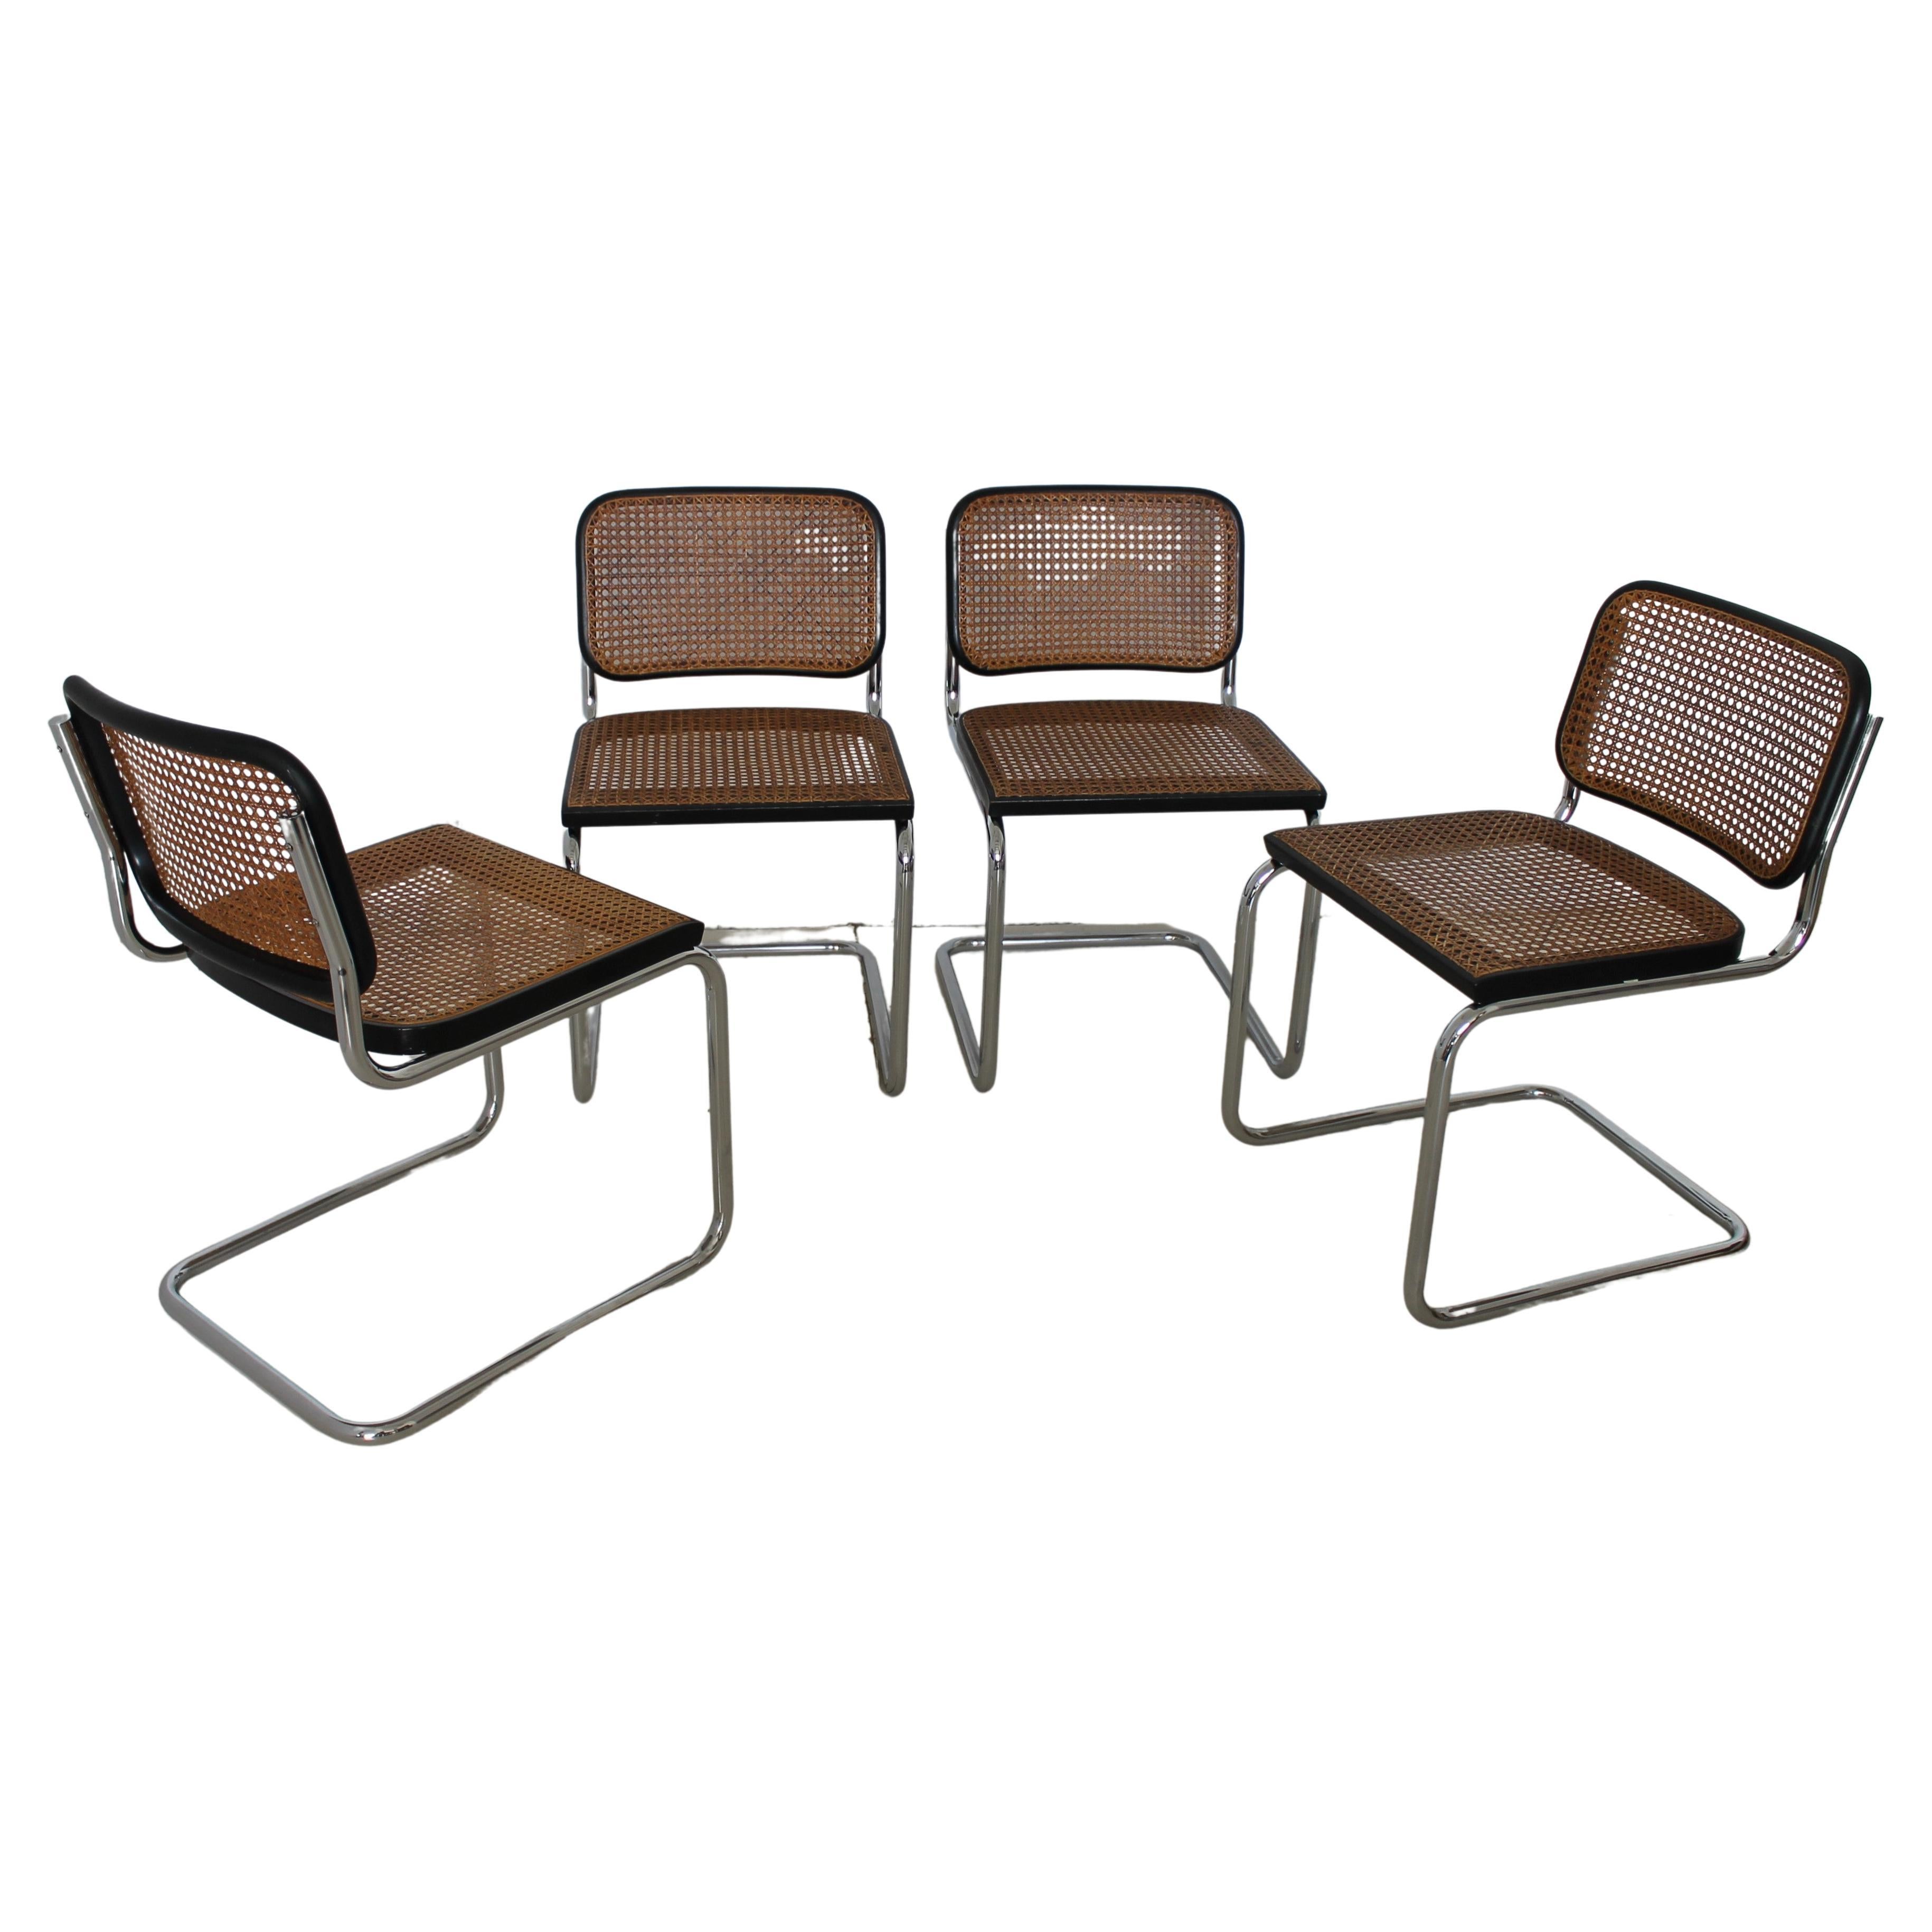 Original Gavina Set of Four "Cesca" Chairs by M. Breuer, 1965